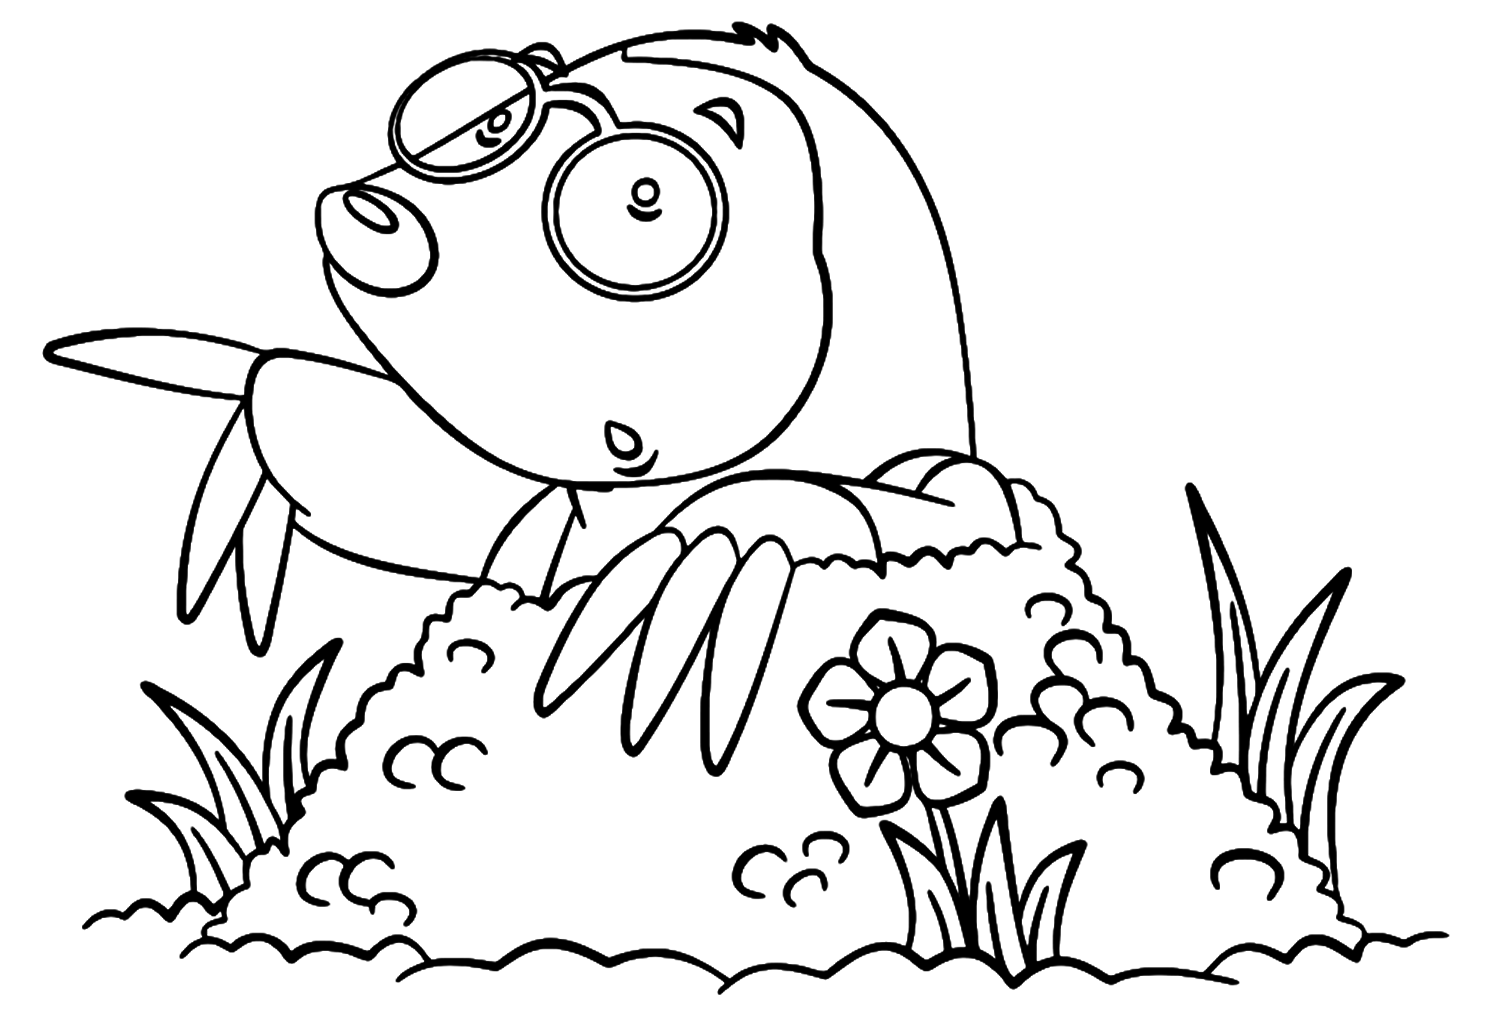 Mole In Cartoon Style from Mole